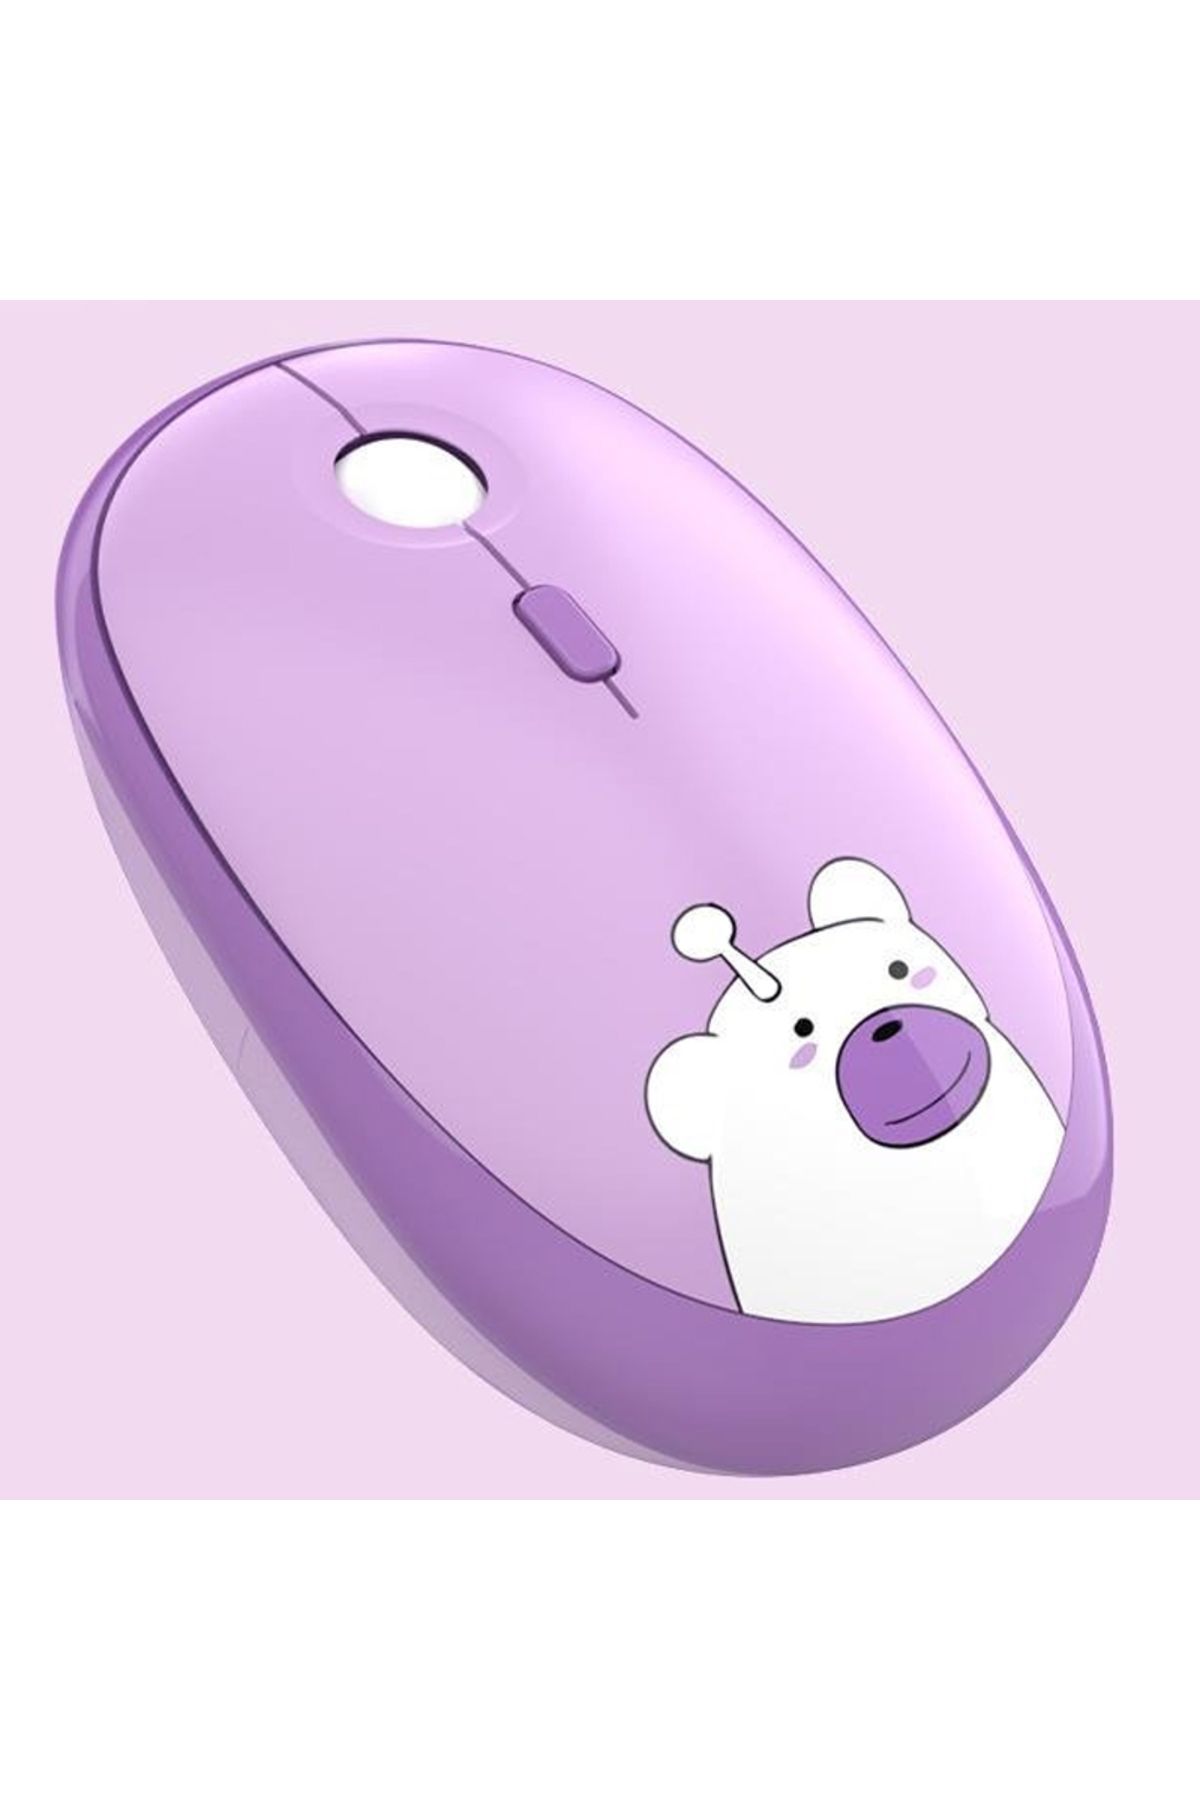 Coverzone Kablosuz Wireless Mouse Renkli Ayıcık Tasarım Kablosuz Sessiz Bilgisayar Laptop için Pilli Fare M2